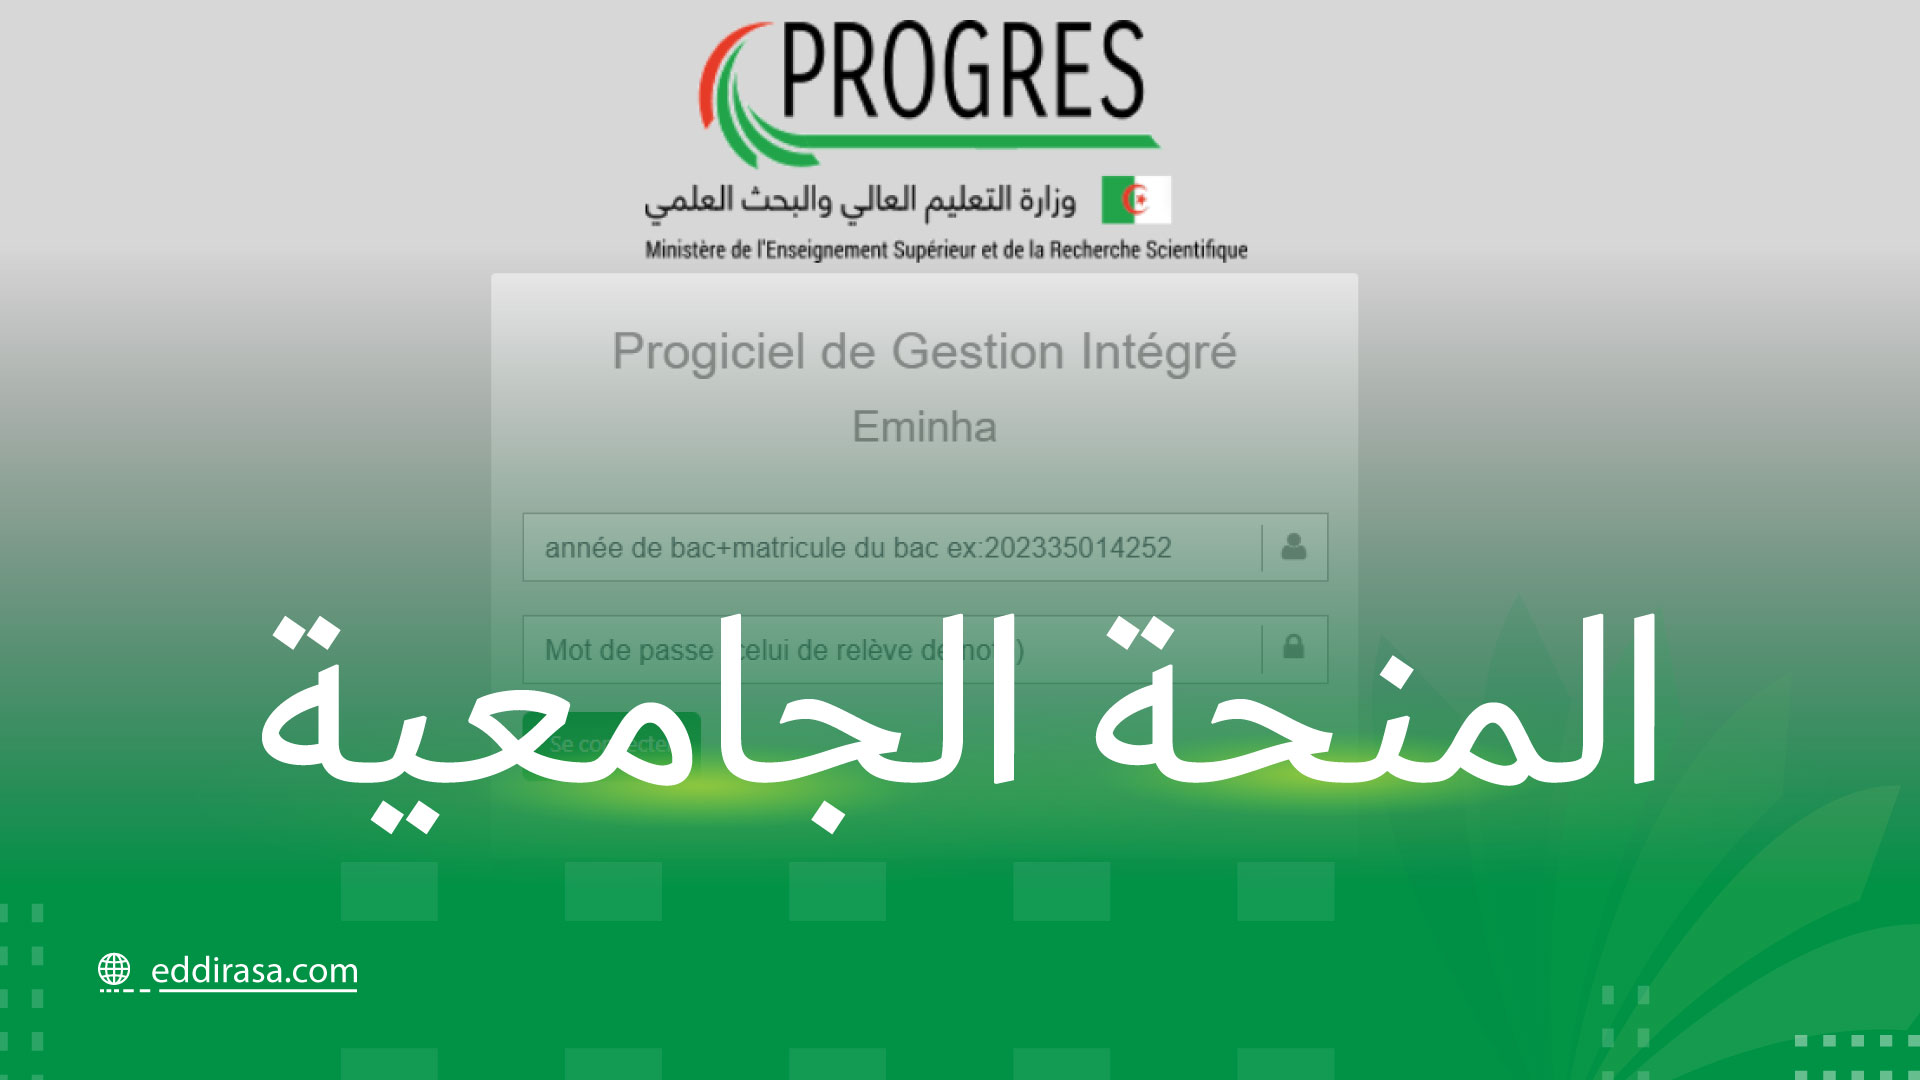 موقع التسجيل في المنحة الجامعية progres.mesrs.dz/eminha